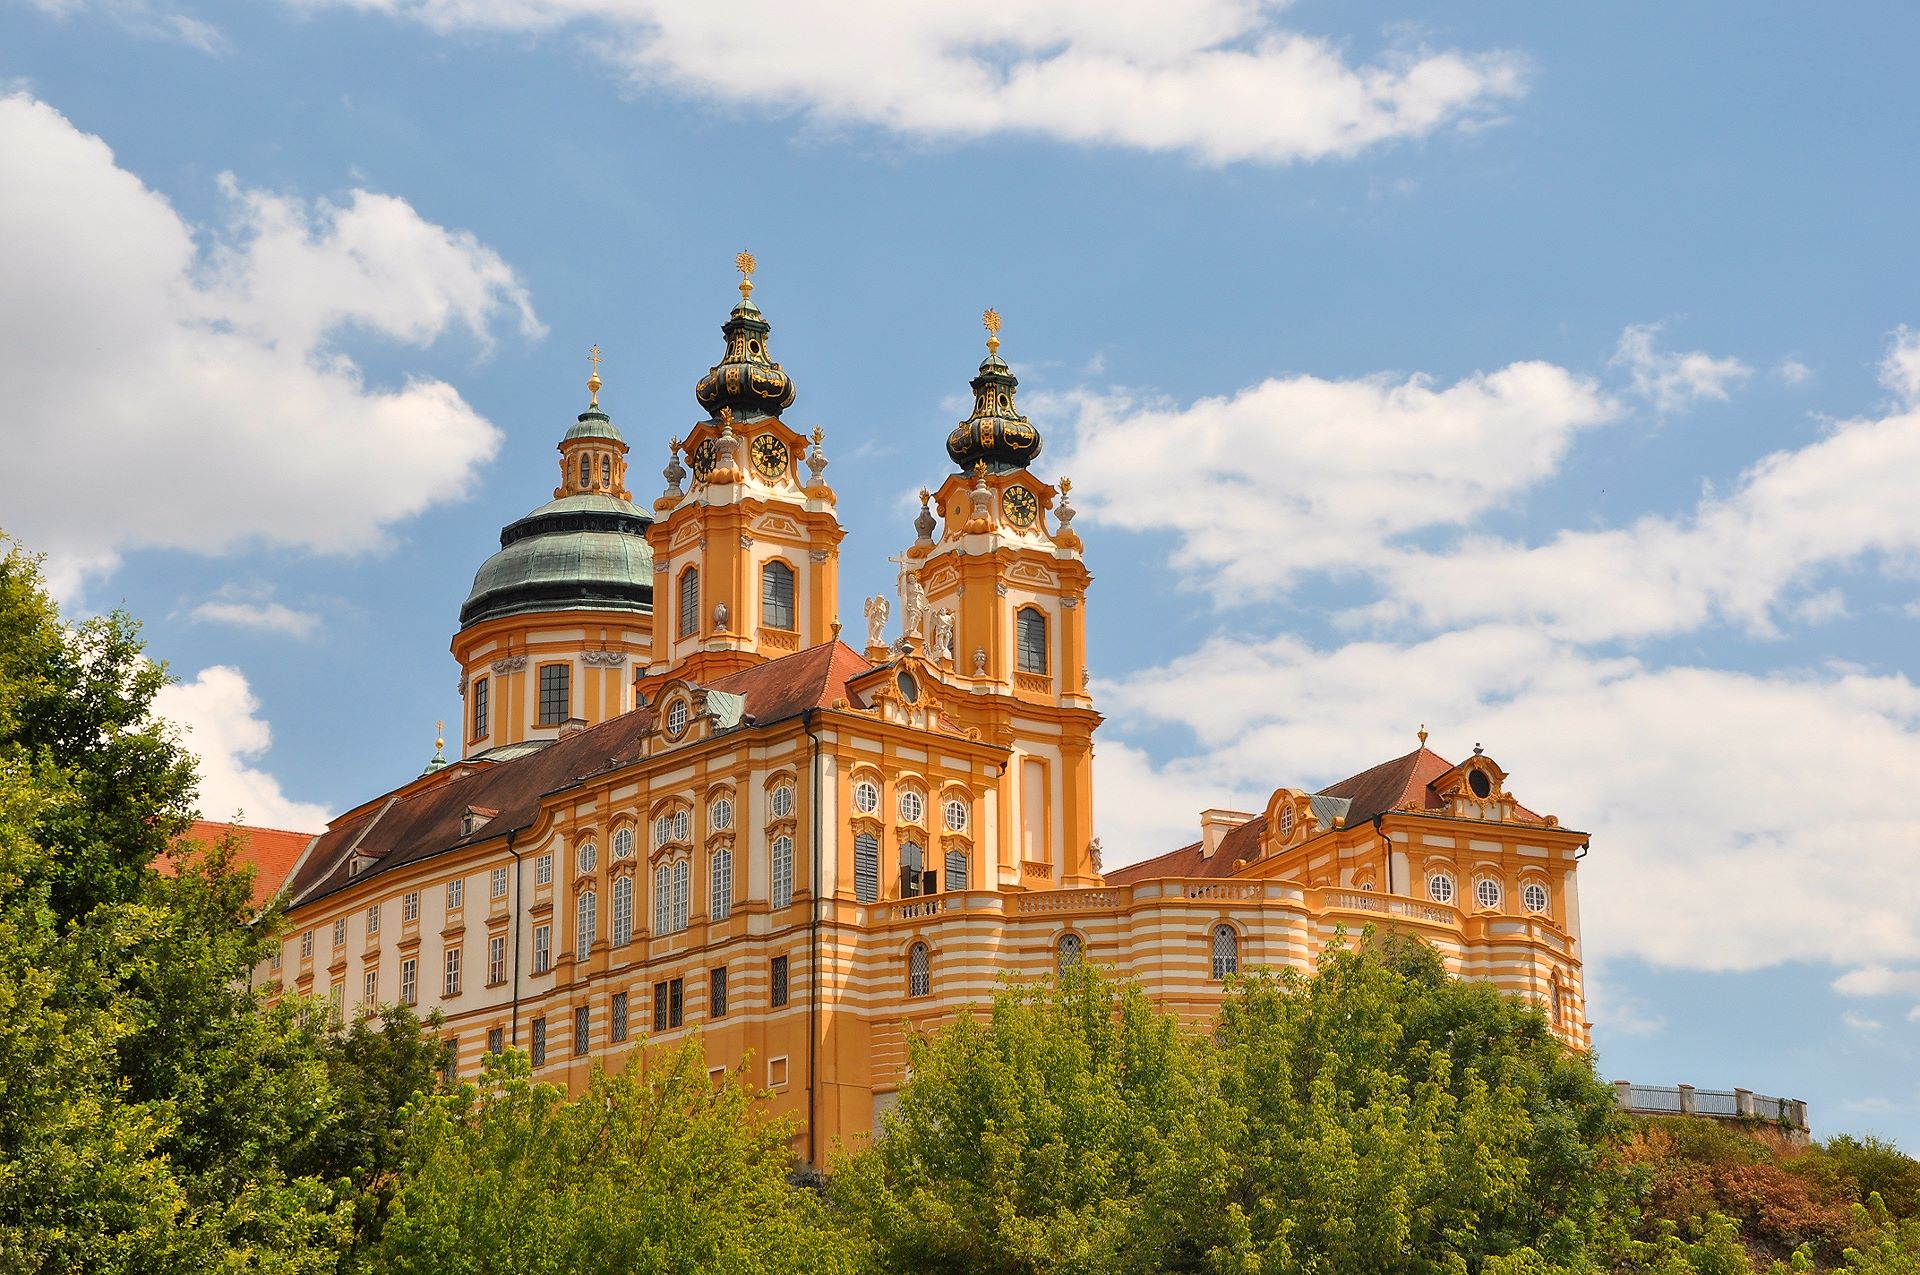 Vom Niveau der Donau aus gesehen steht das Benediktinerkloster imposant auf einer felsigen Erhebung